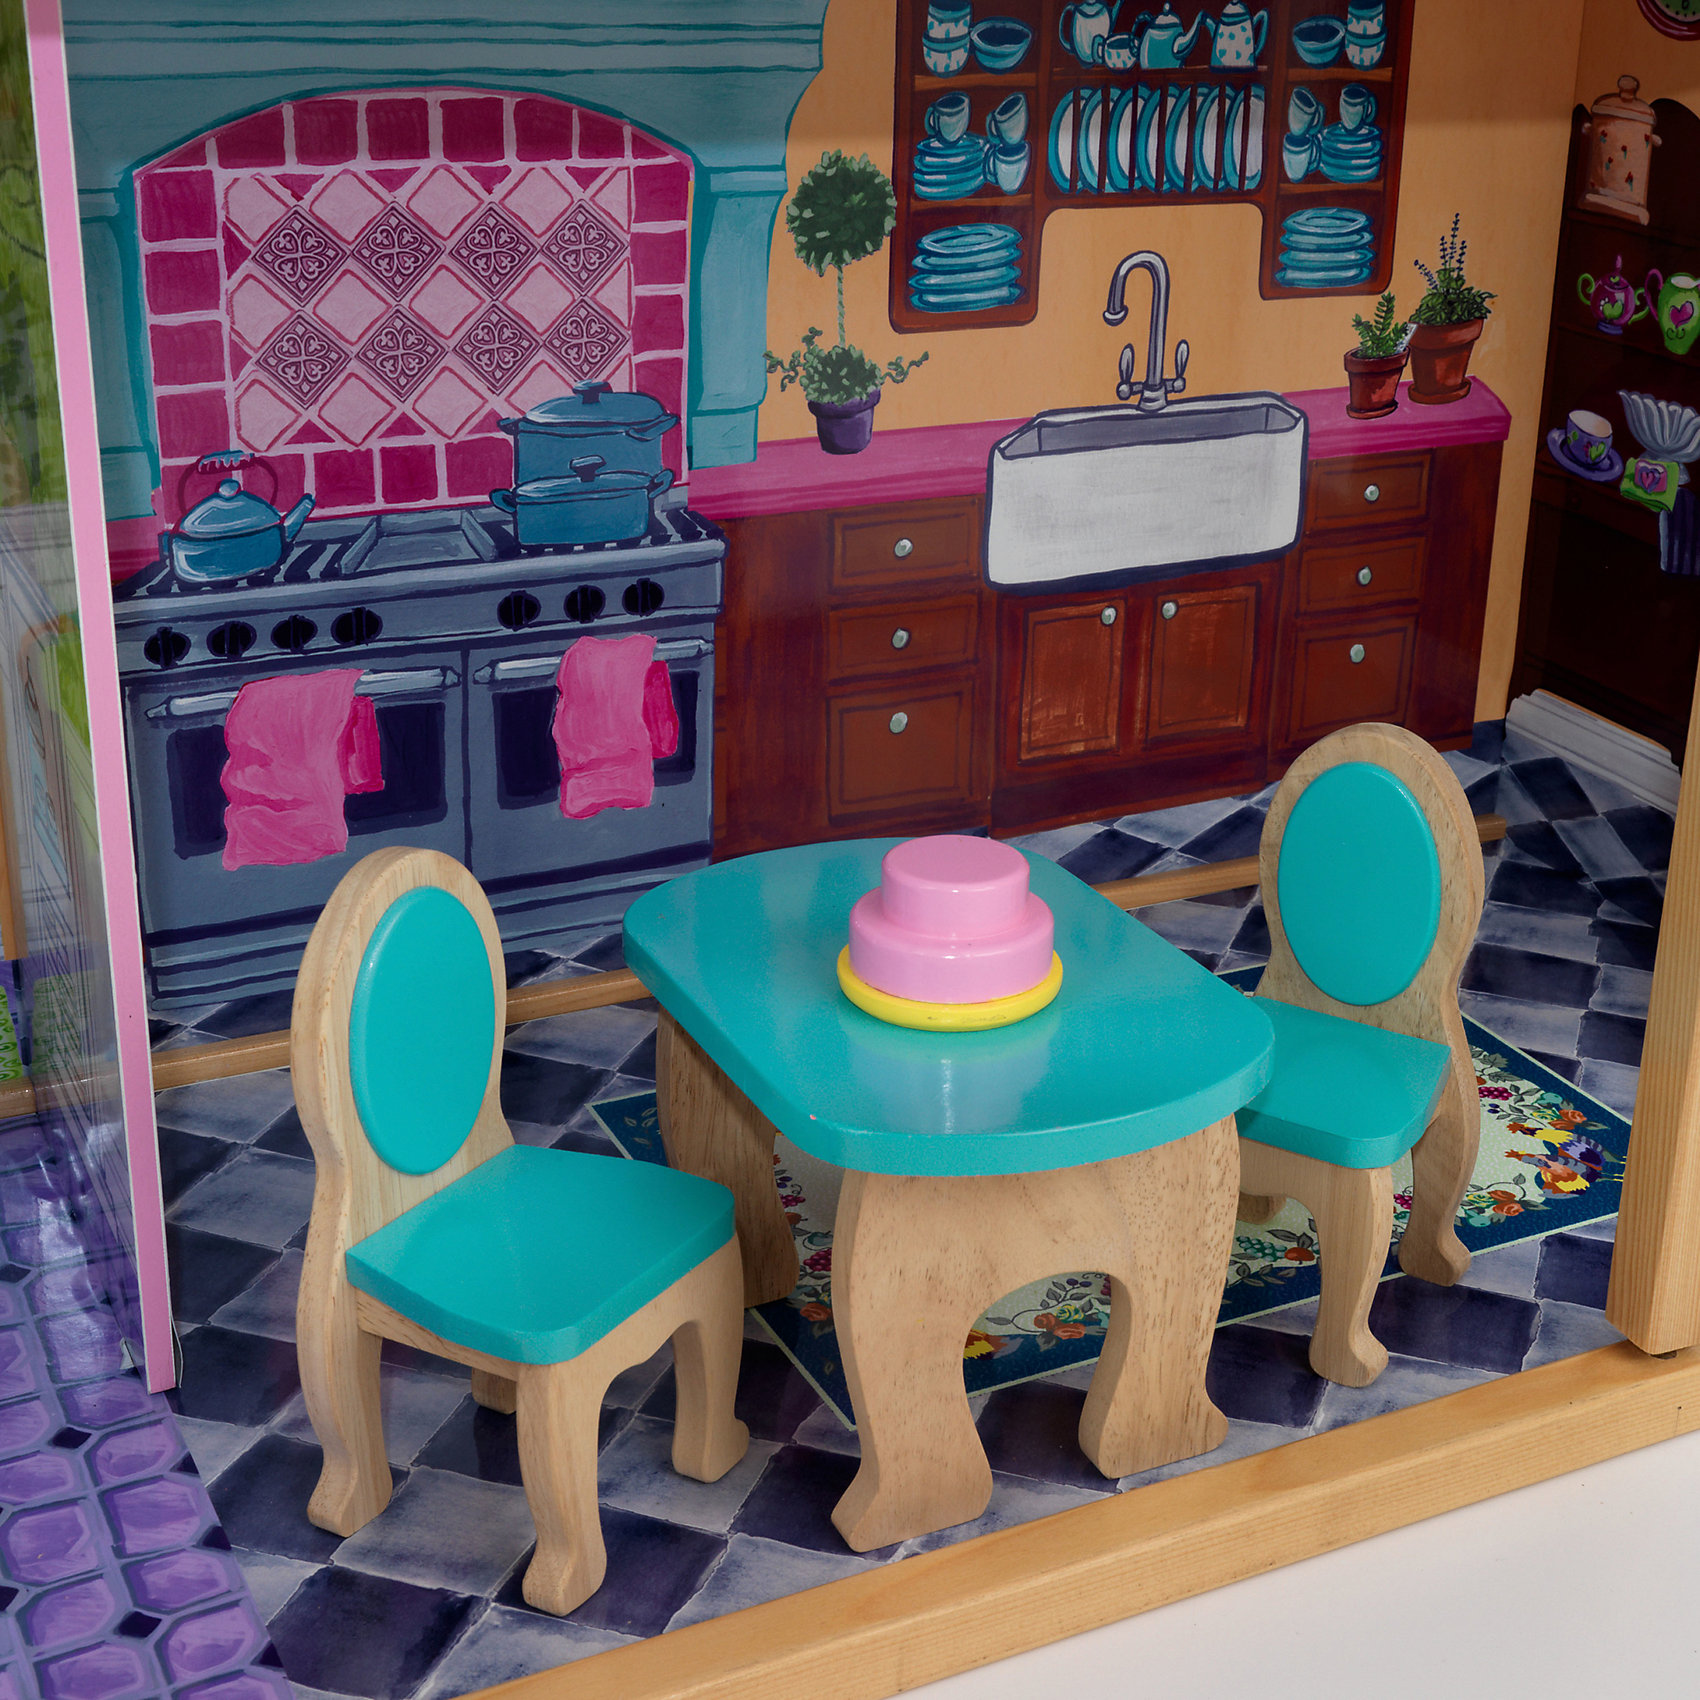 Кукольный дом Барби "Особняк мечты", с мебелью, 13 элементов KidKraft 1940230